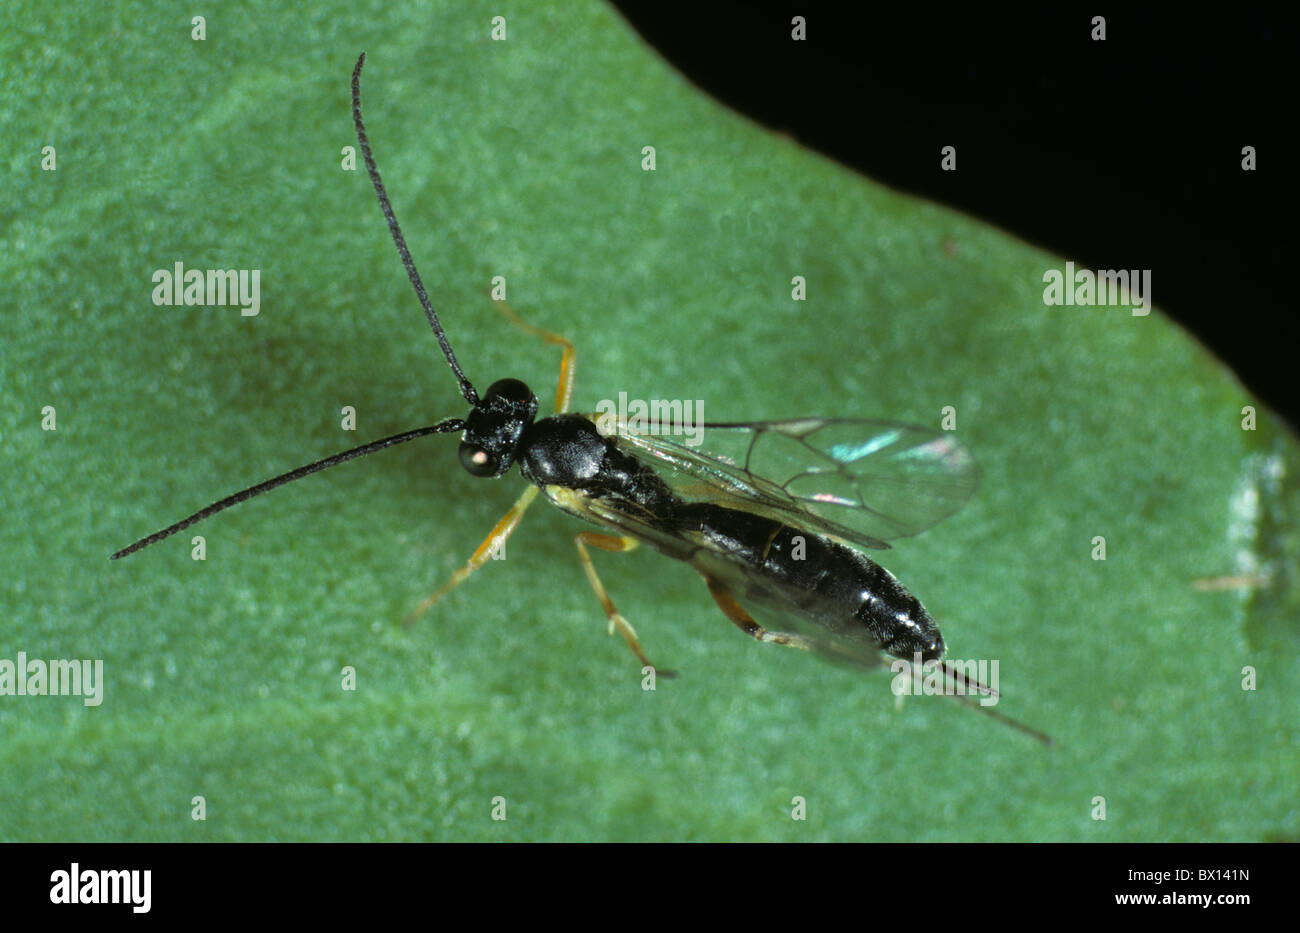 Ichneumonid wasp (Diadegma semiclausum) parasitoid of diamond back moth caterpillars Stock Photo